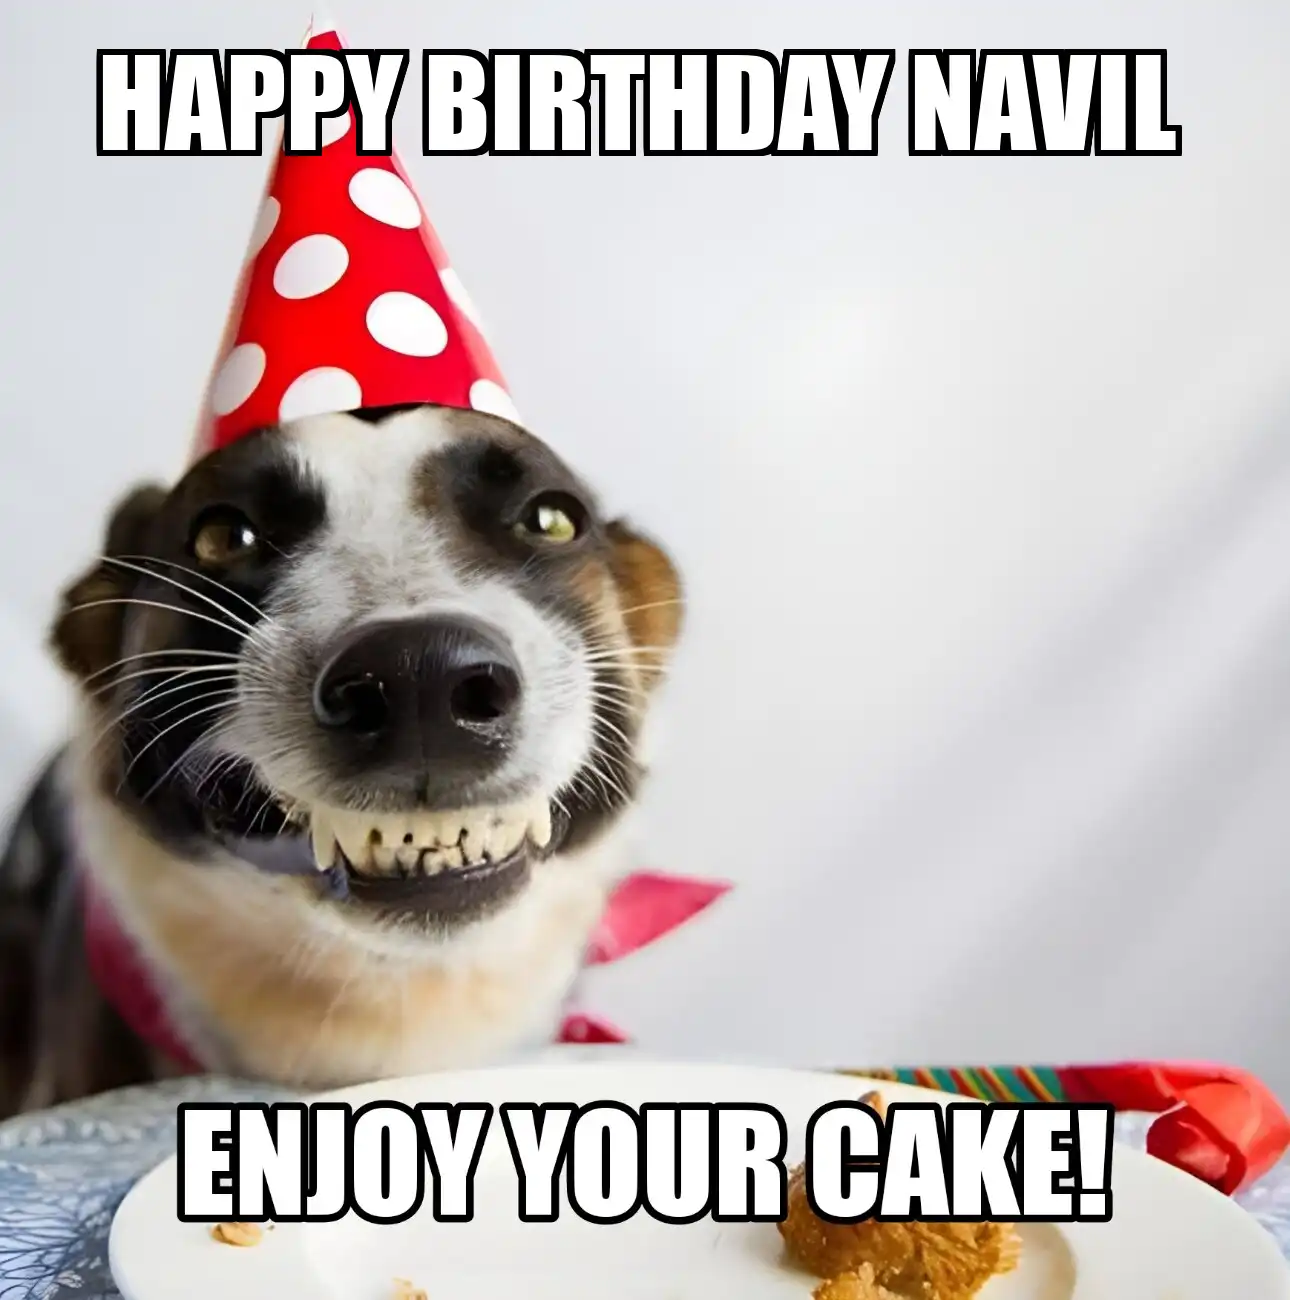 Happy Birthday Navil Enjoy Your Cake Dog Meme